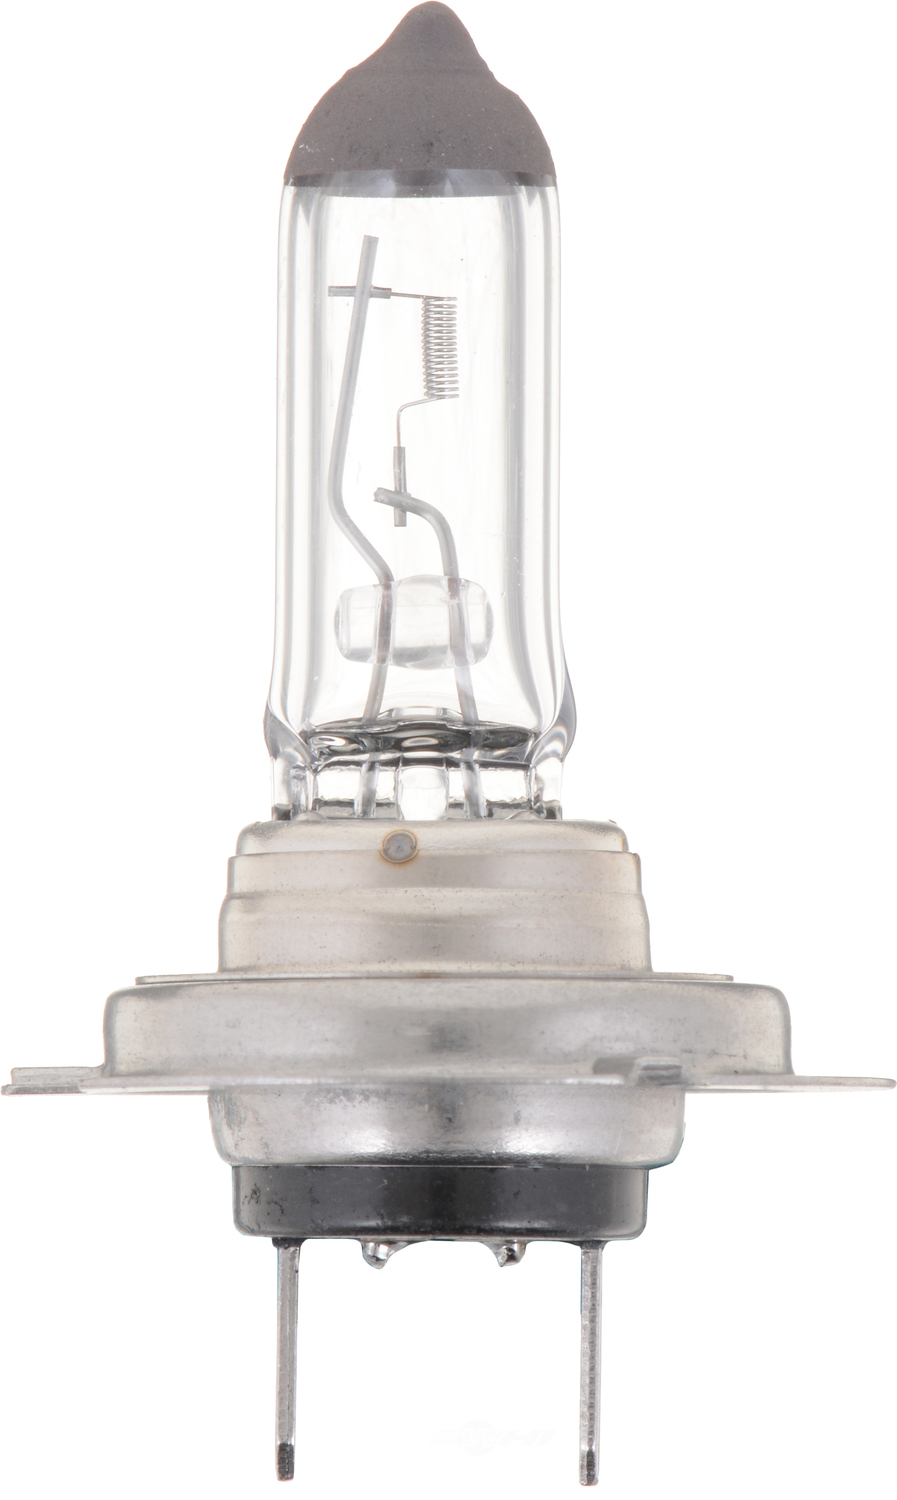 PHILIPS LIGHTING COMPANY - Standard - Single Blister Pack Cornering Light Bulb - PLP H7B1